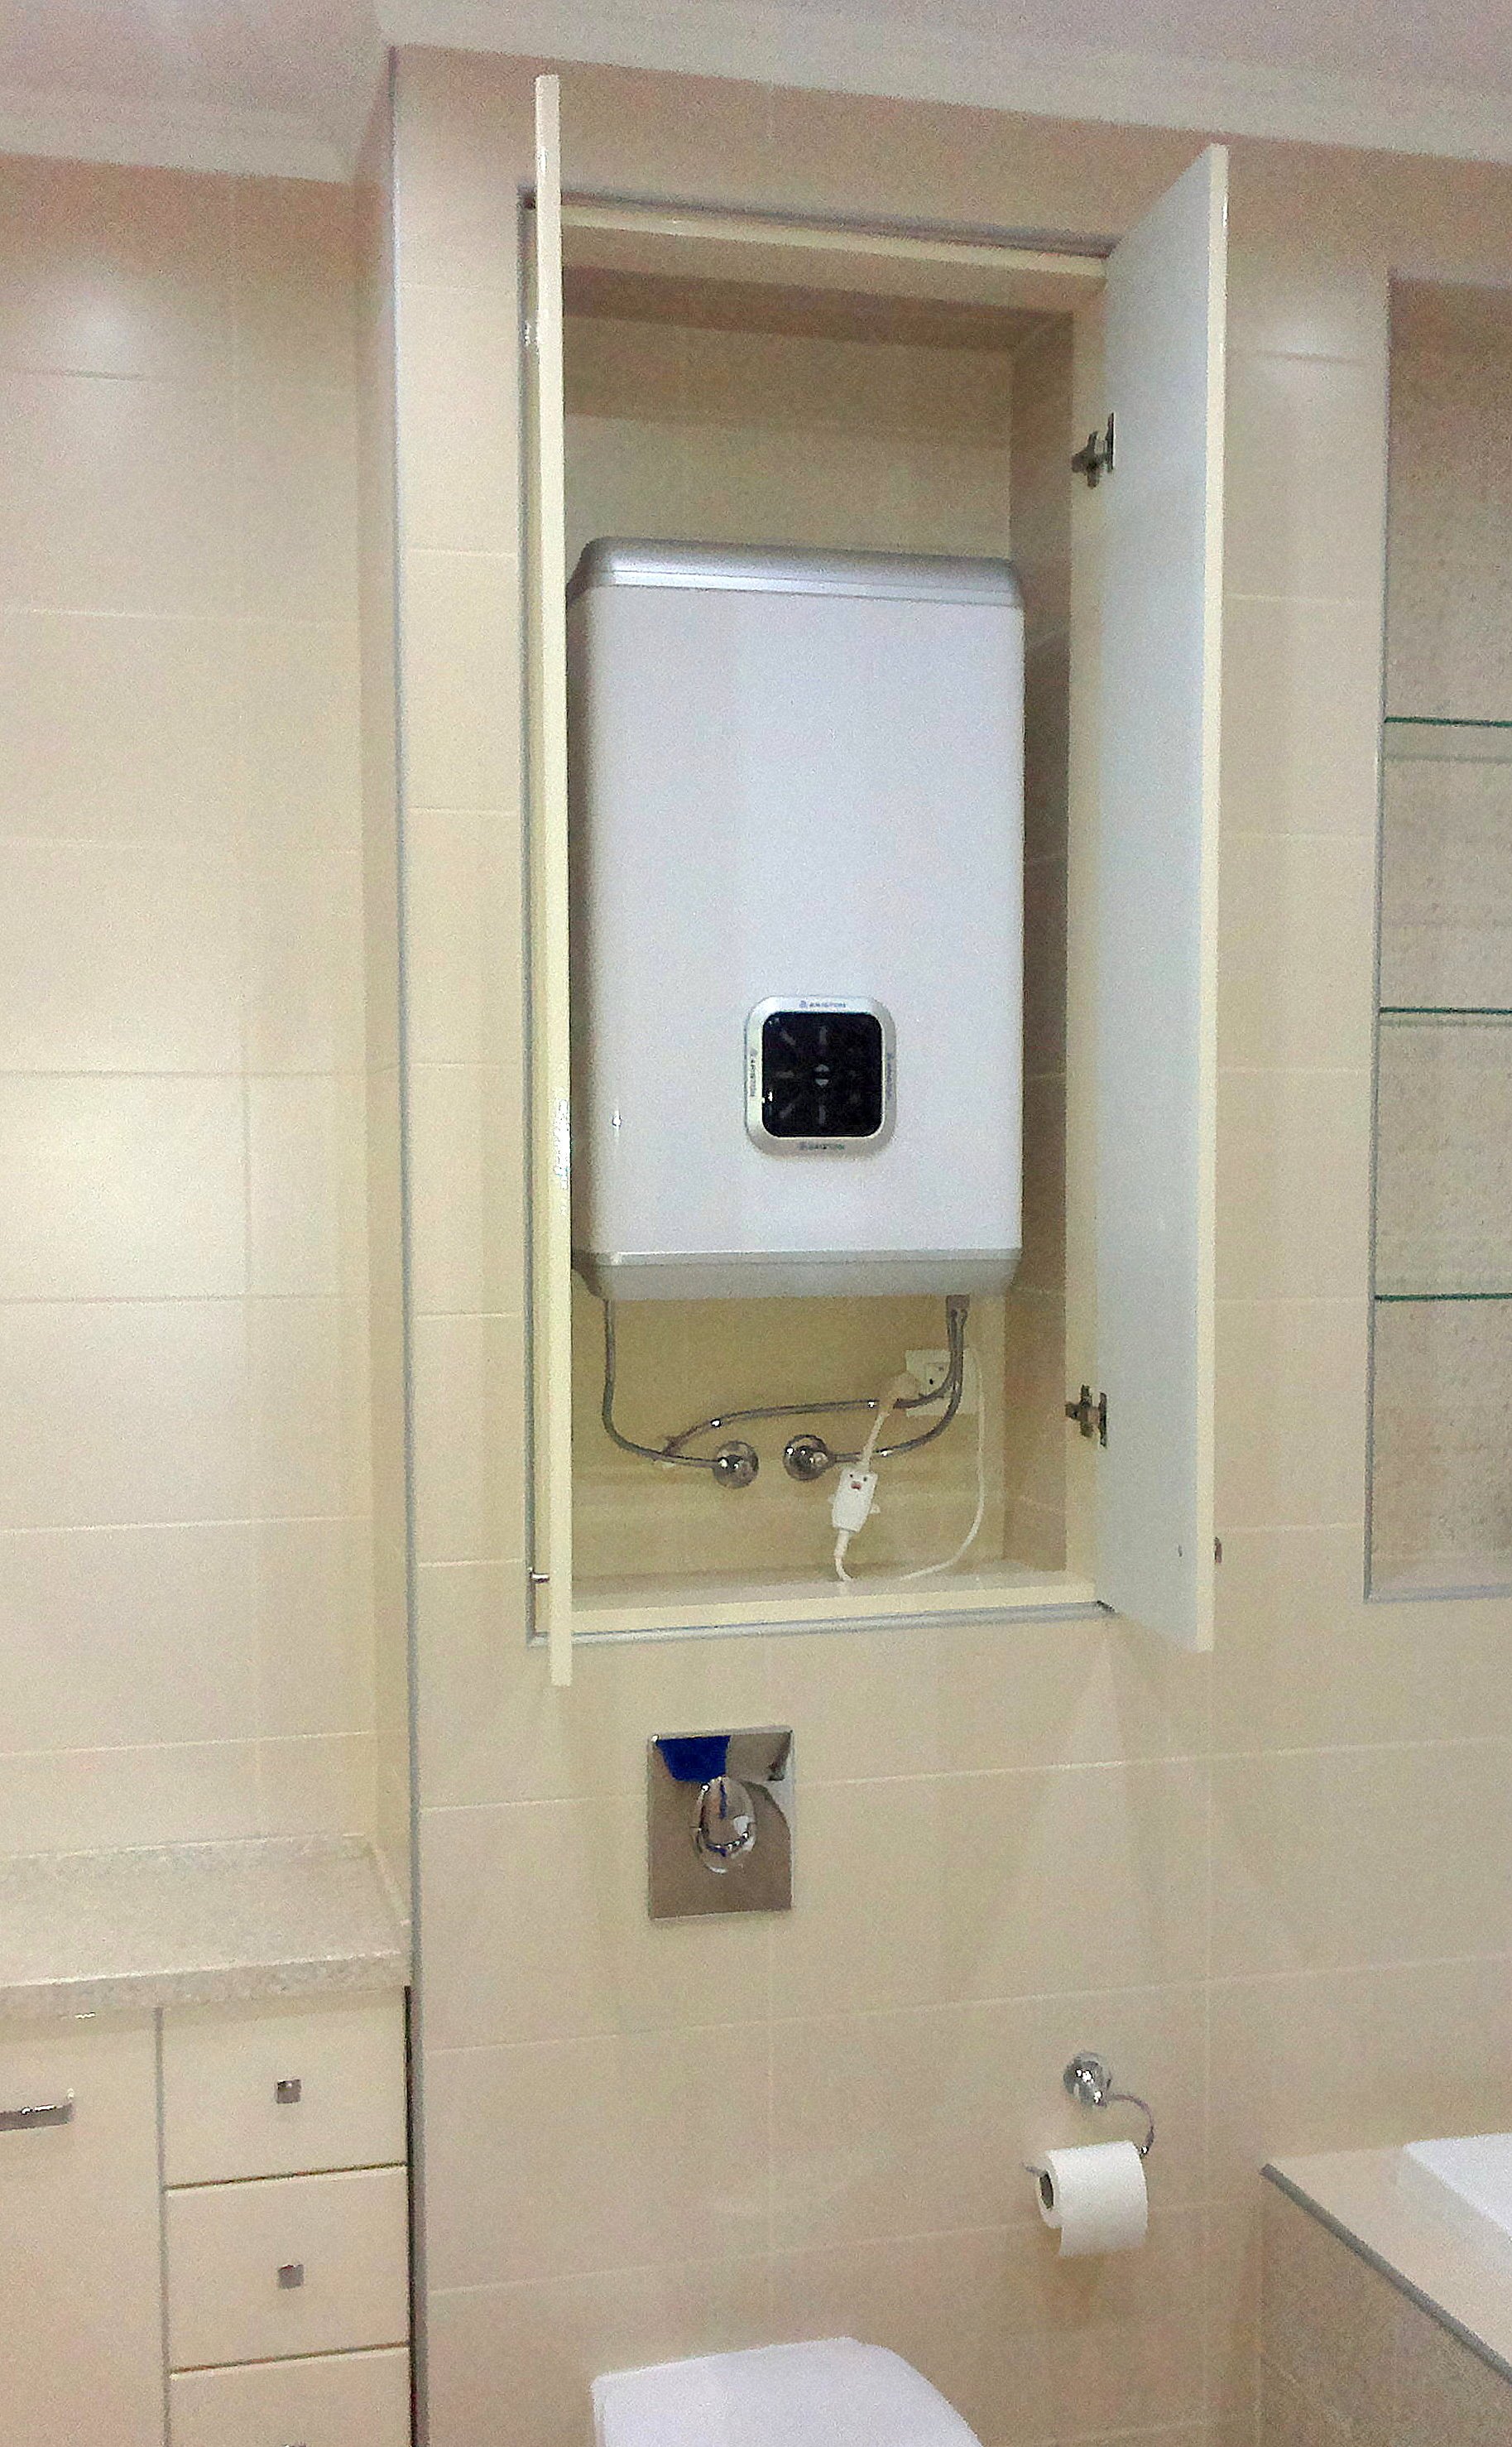 водонагреватель в ванной дизайн